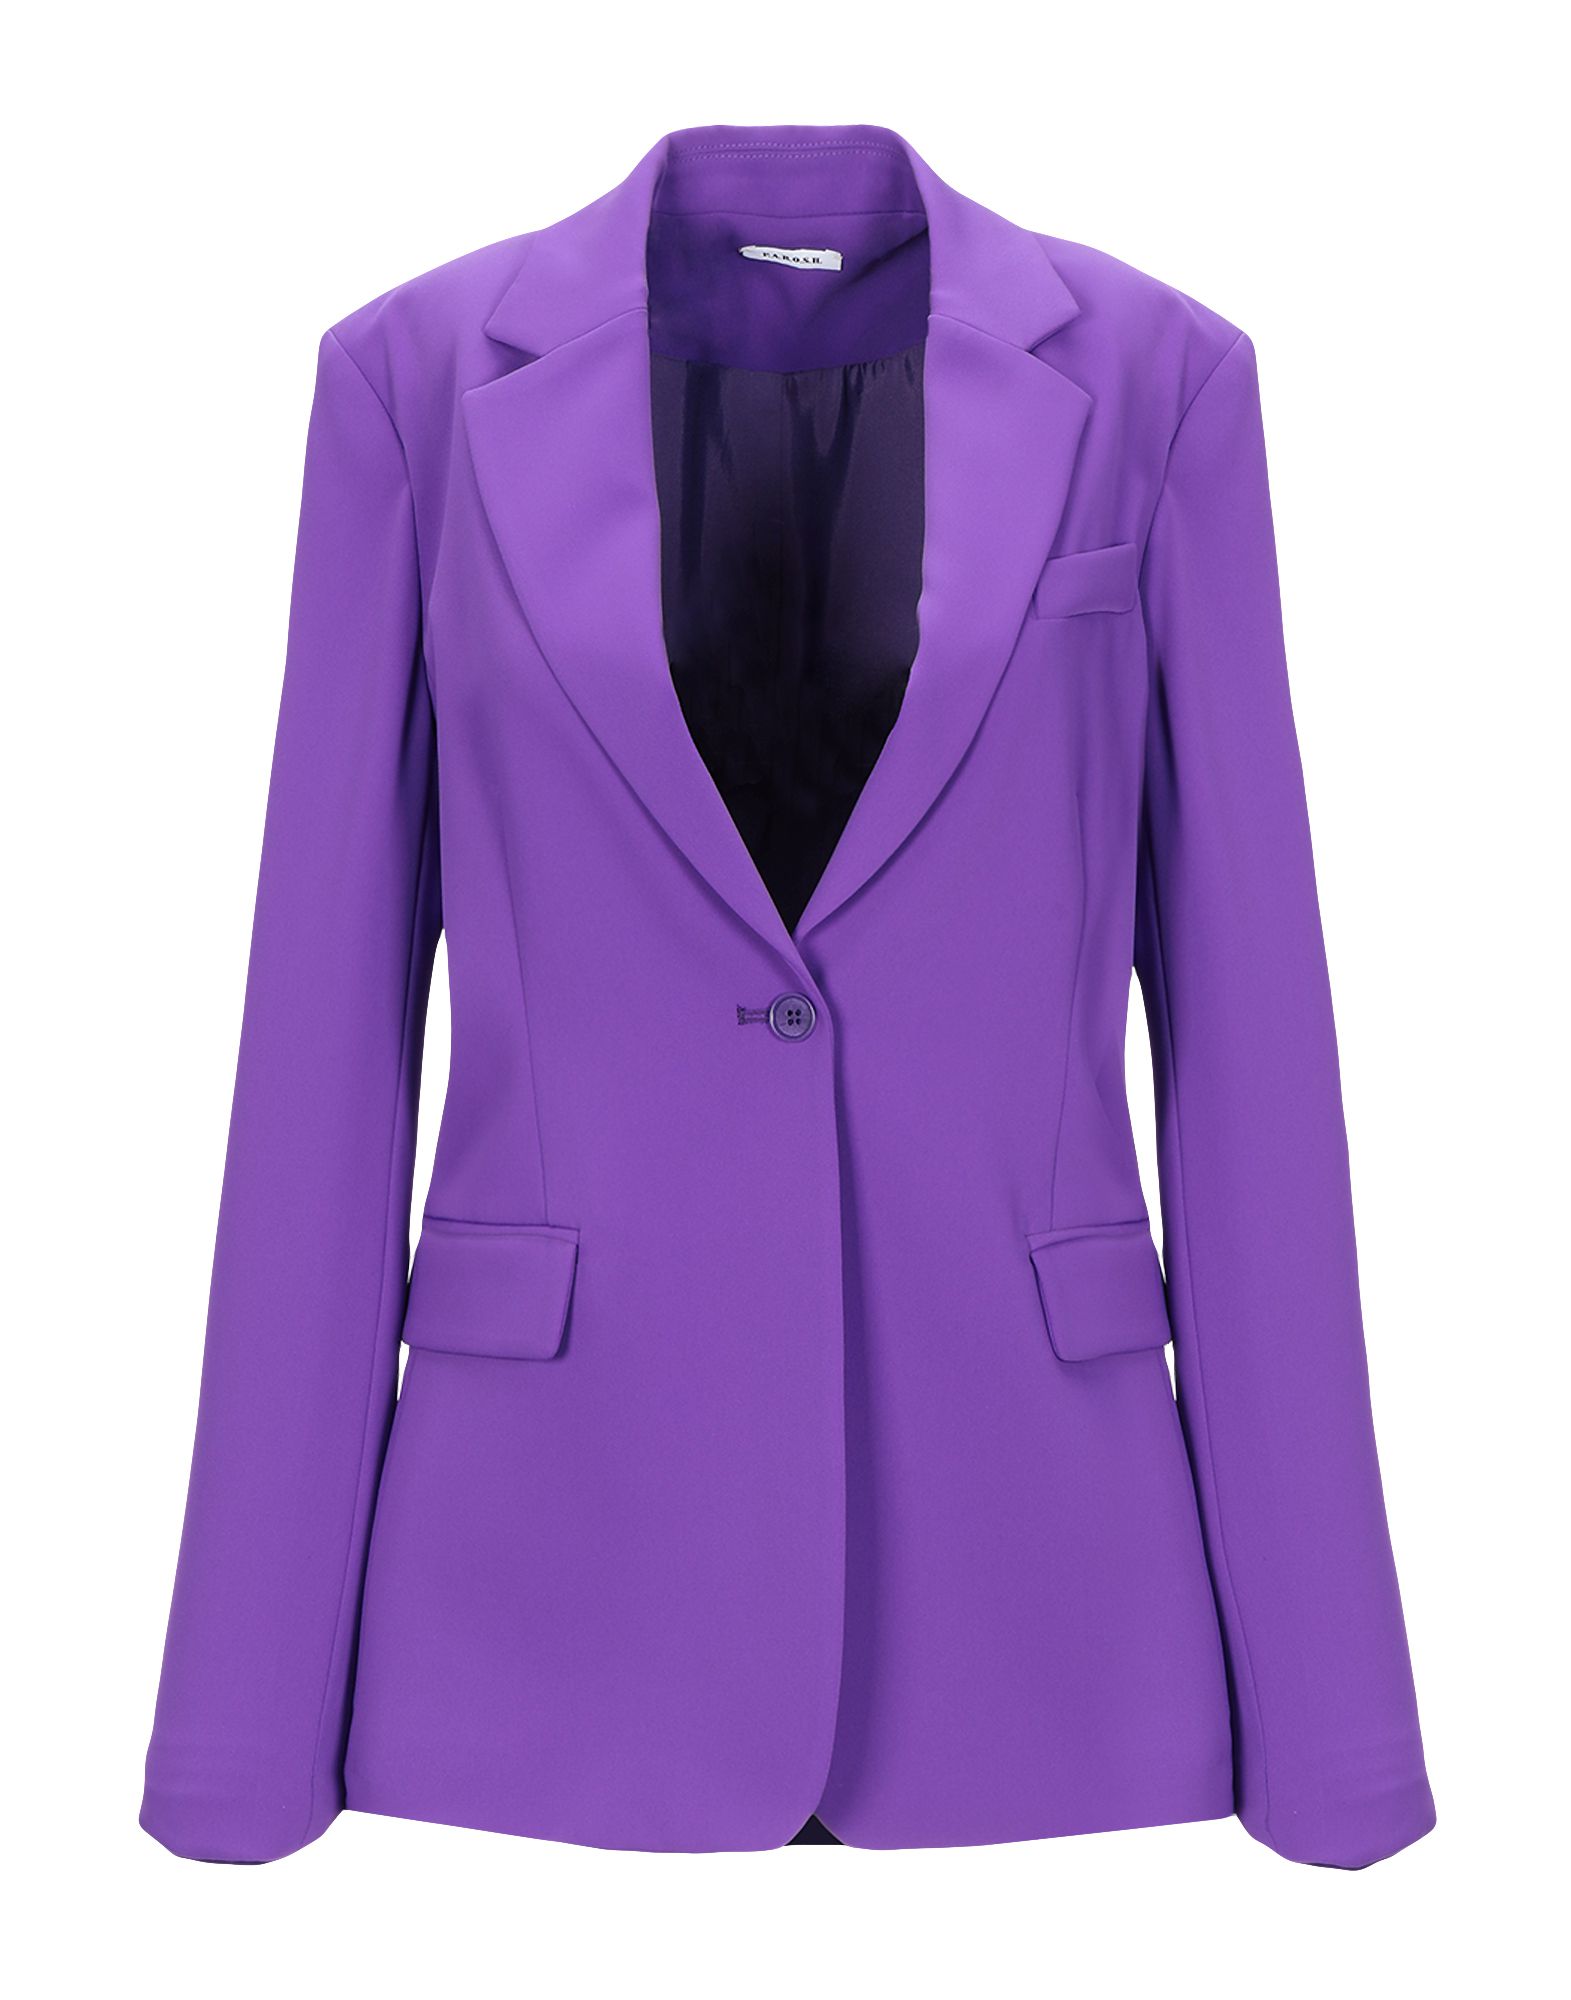 Женские жакеты купить в москве. Фиолетовый пиджак женский. Сиреневый пиджак женский. Фиолетовый жакет. Лиловый пиджак женский.